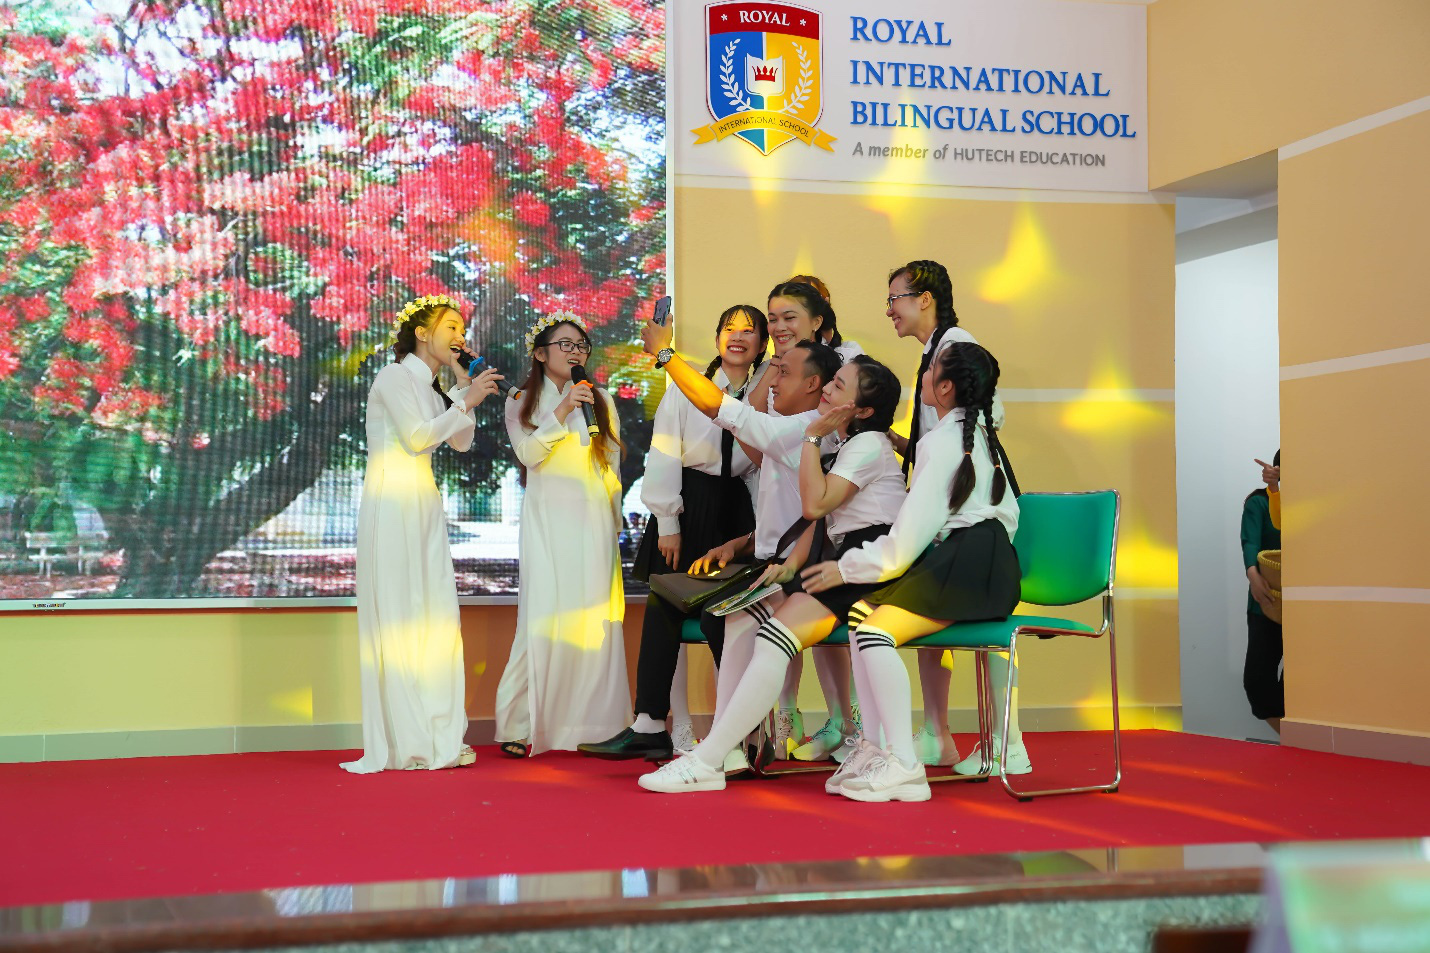 NSƯT Công Ninh, Ca sĩ Sỹ Luân bất ngờ trước tài năng của giáo viên trường Royal School - Ảnh 1.